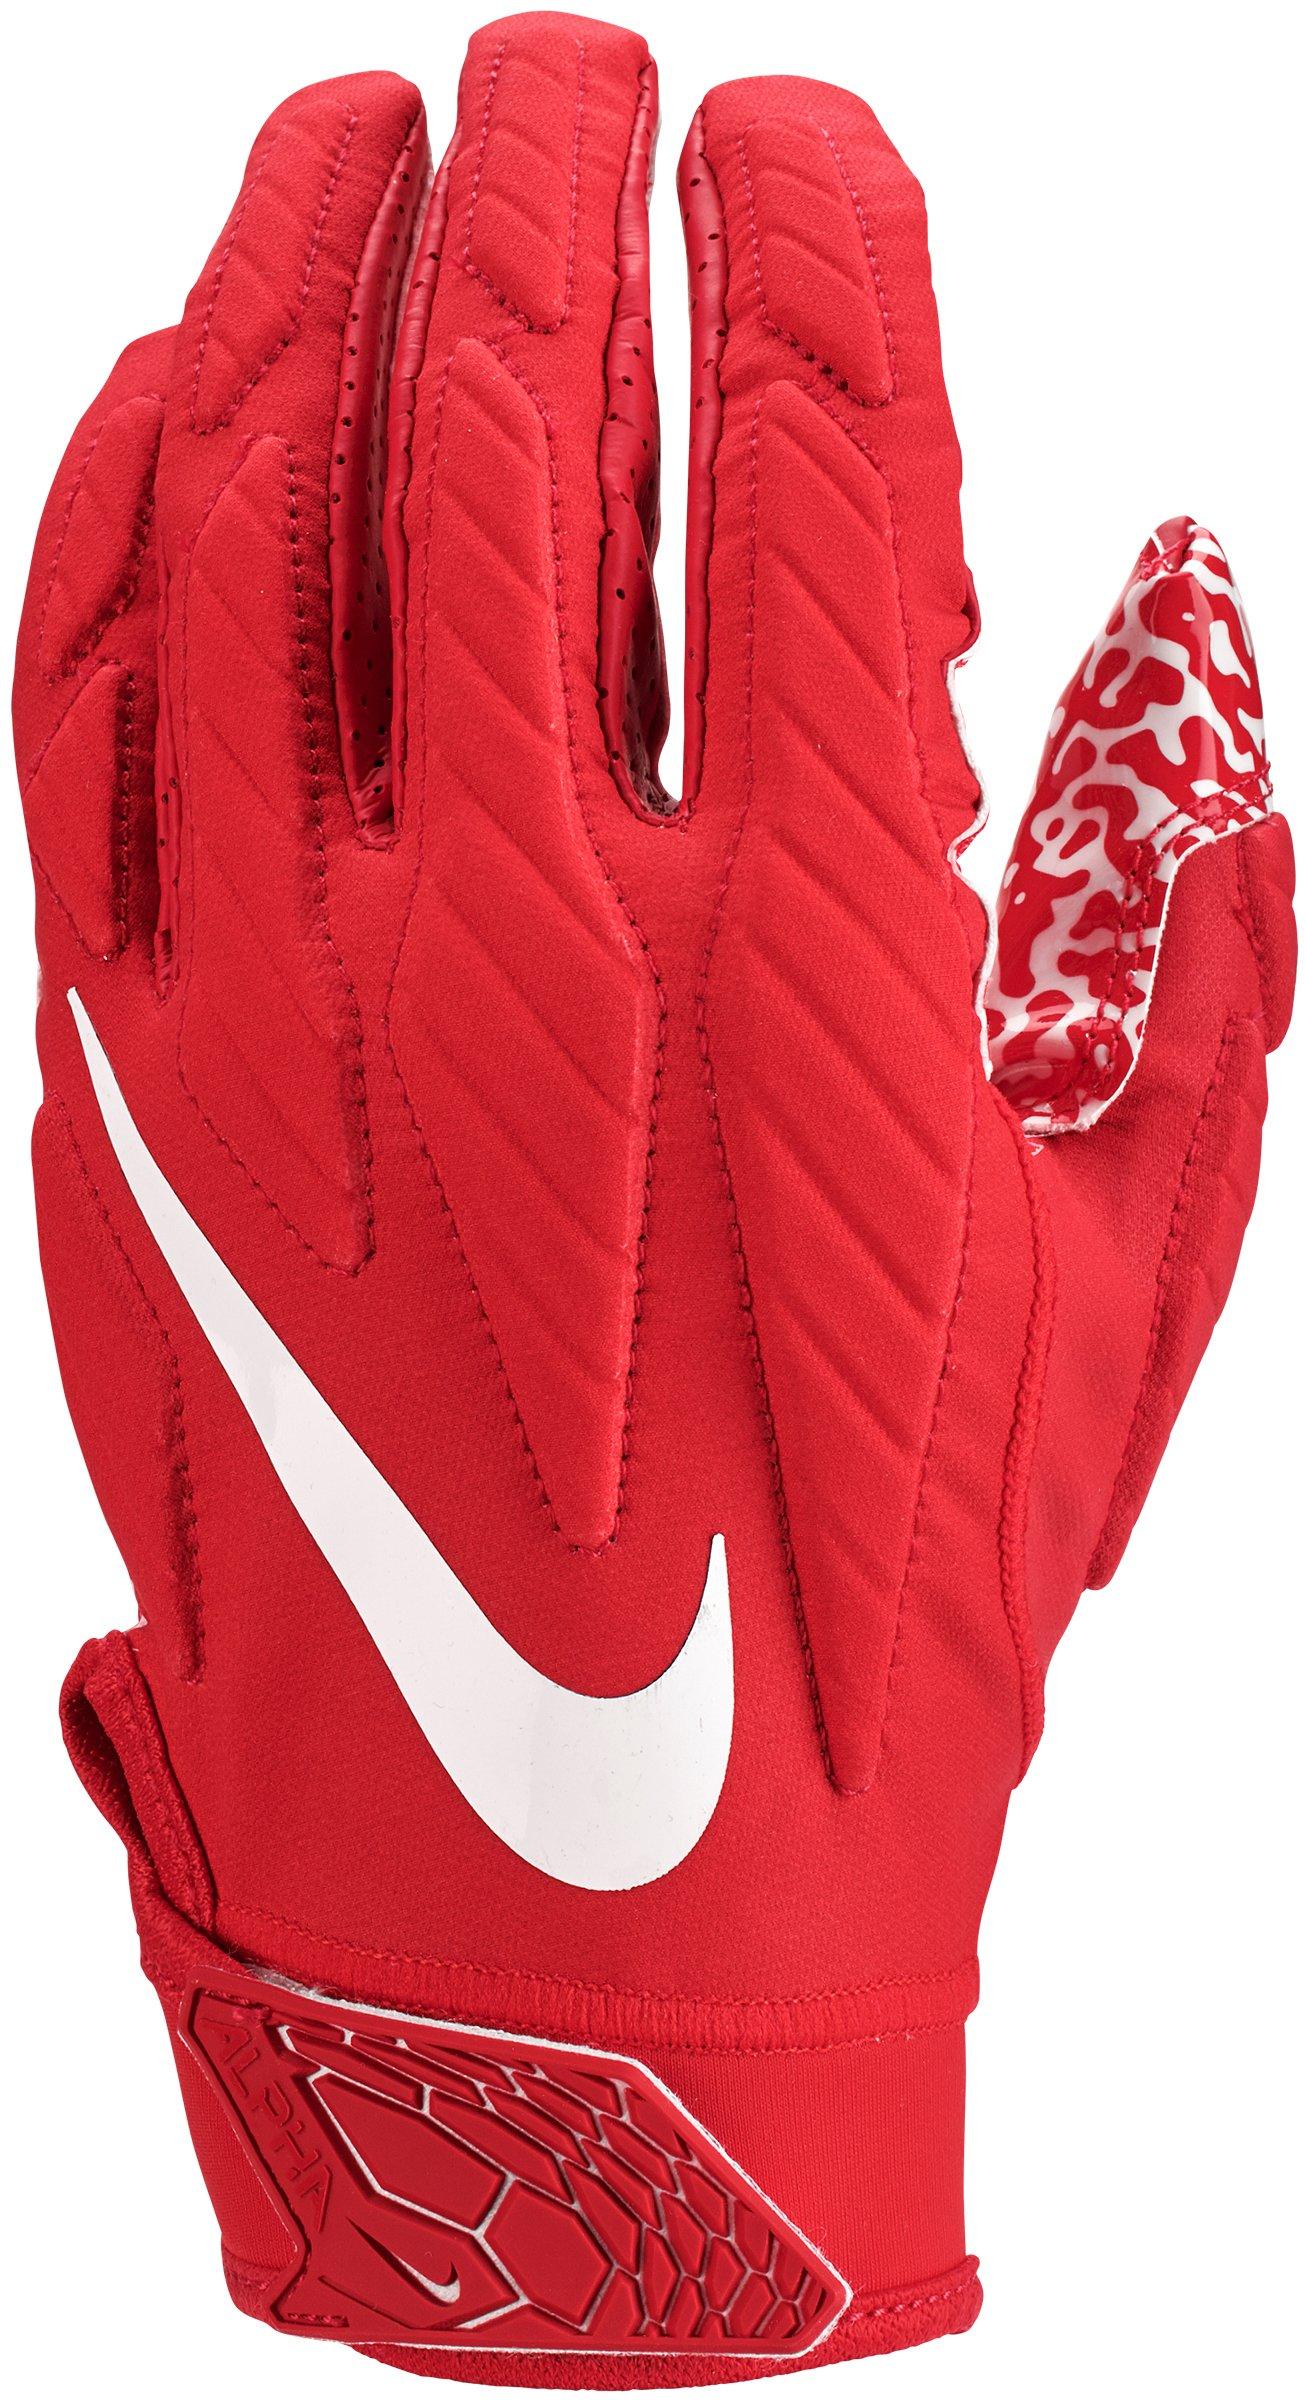 Nike Football Gloves Superbad | tunersread.com